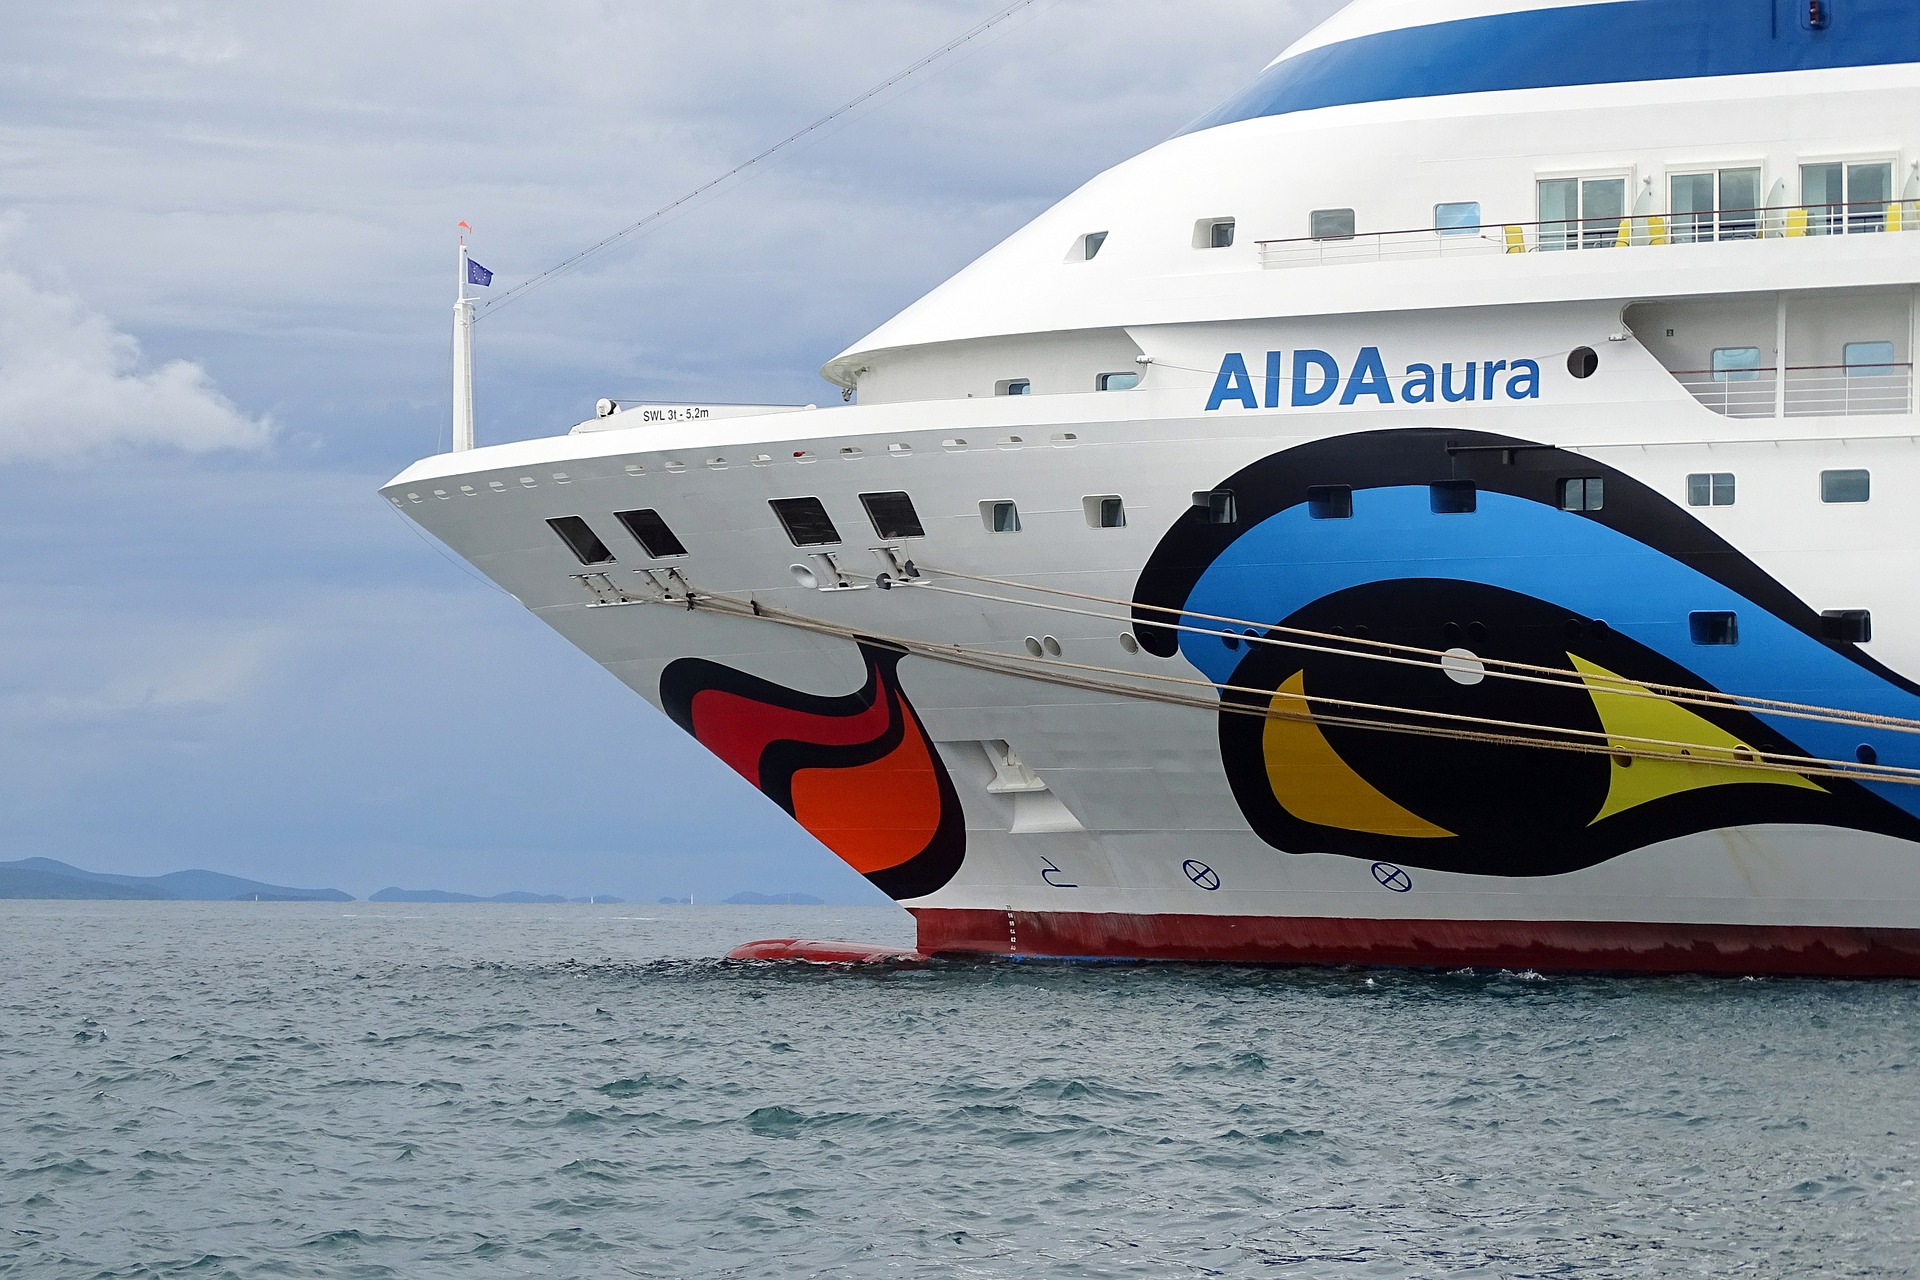 Barrierefreie Kreuzfahrt mit der AIDA aura